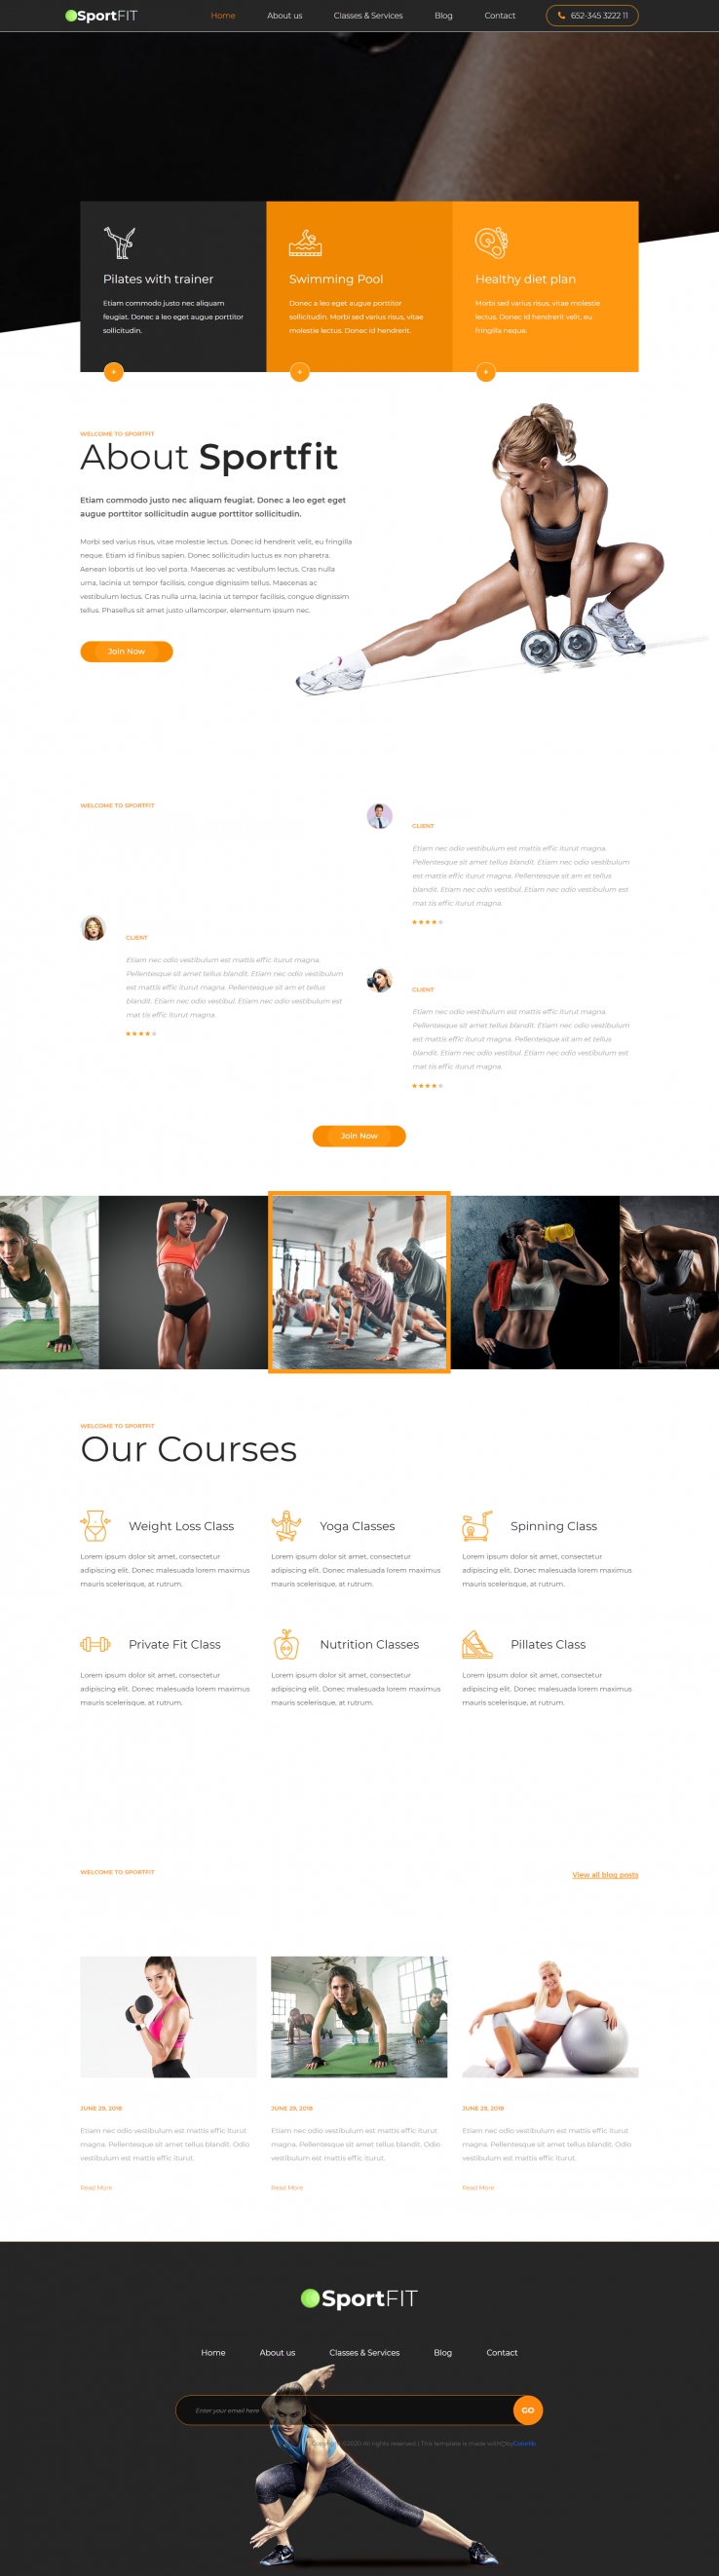 橙色大气风格响应式运动健身网页模板